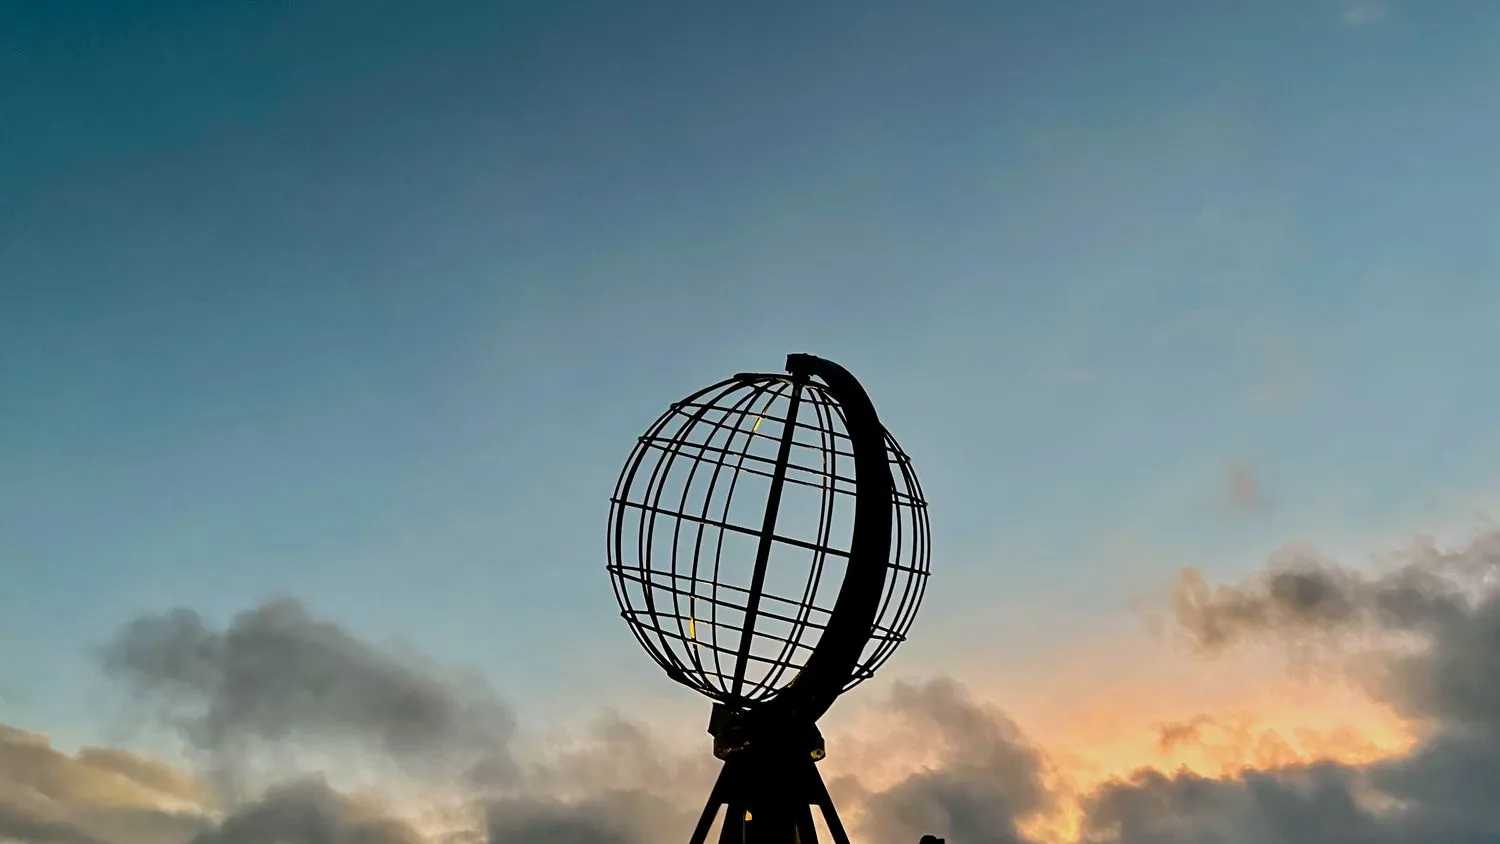 Nordkap-Denkmal mit einer Weltkugel und einem teilweise bewölkten Himmel im Hintergrund